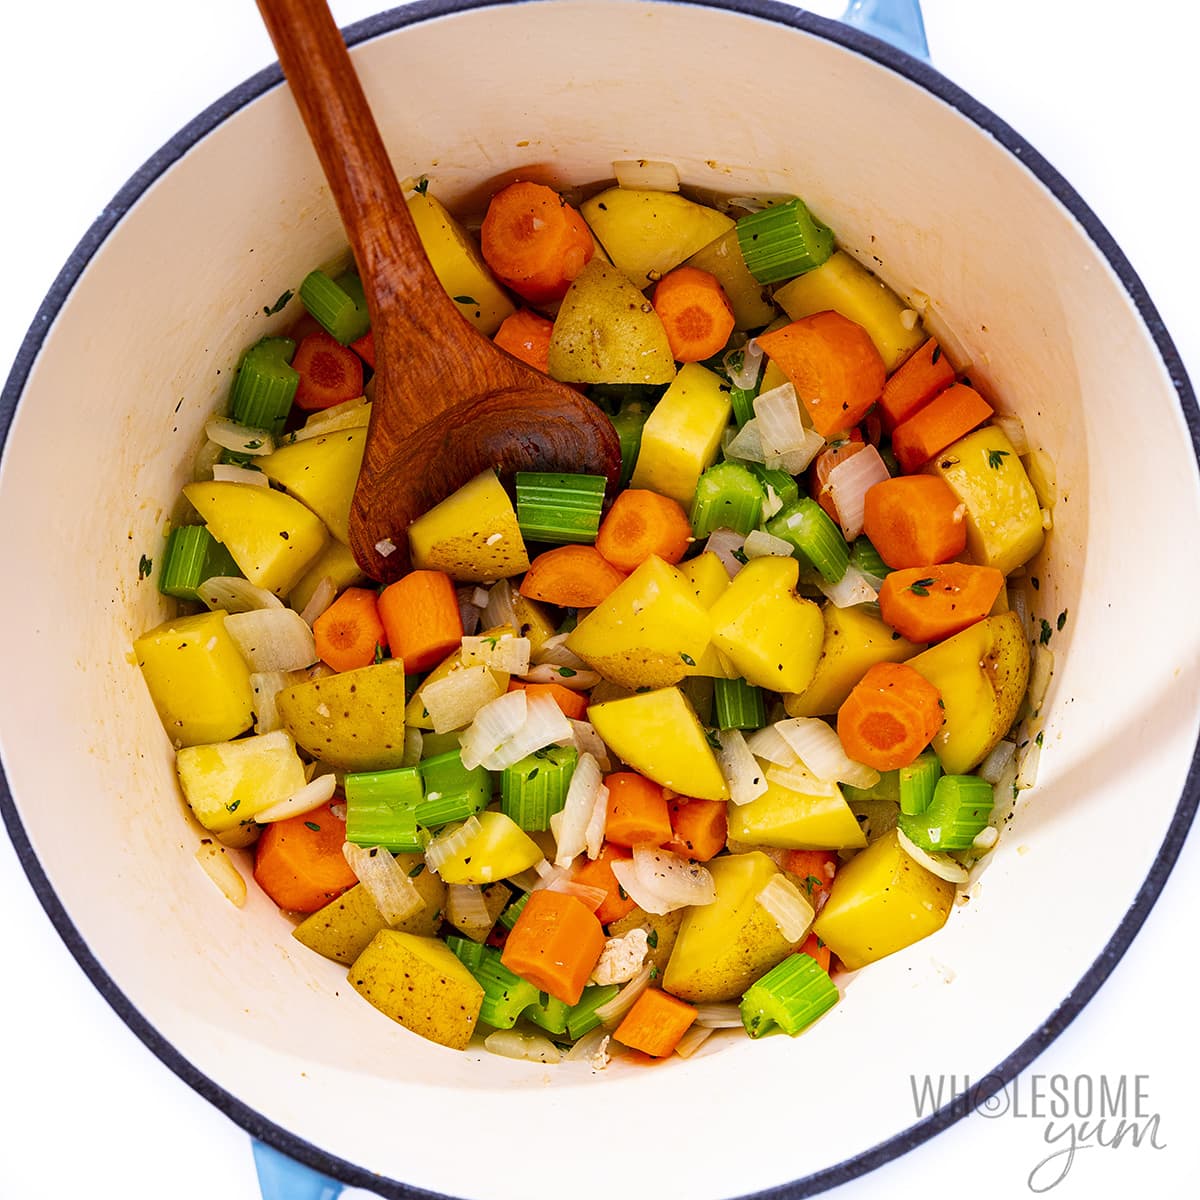 Sauteed veggies in a pot.